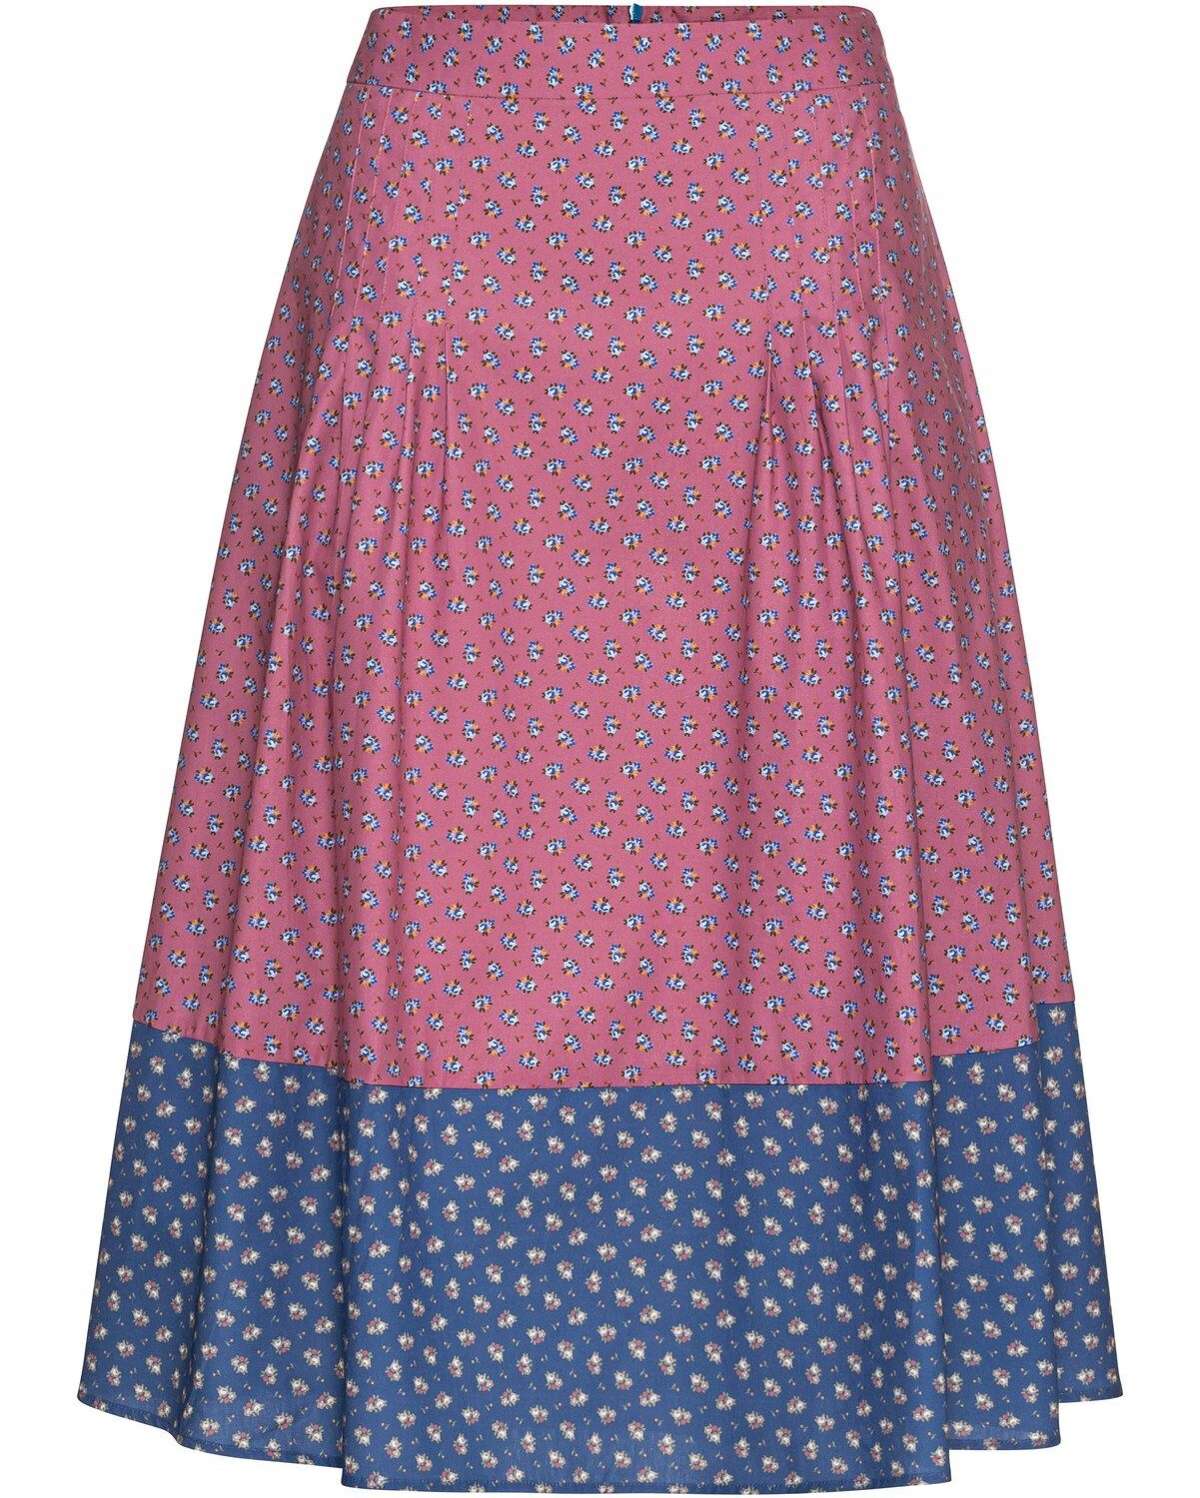 Традиционная юбка-юбка с цветочным принтом